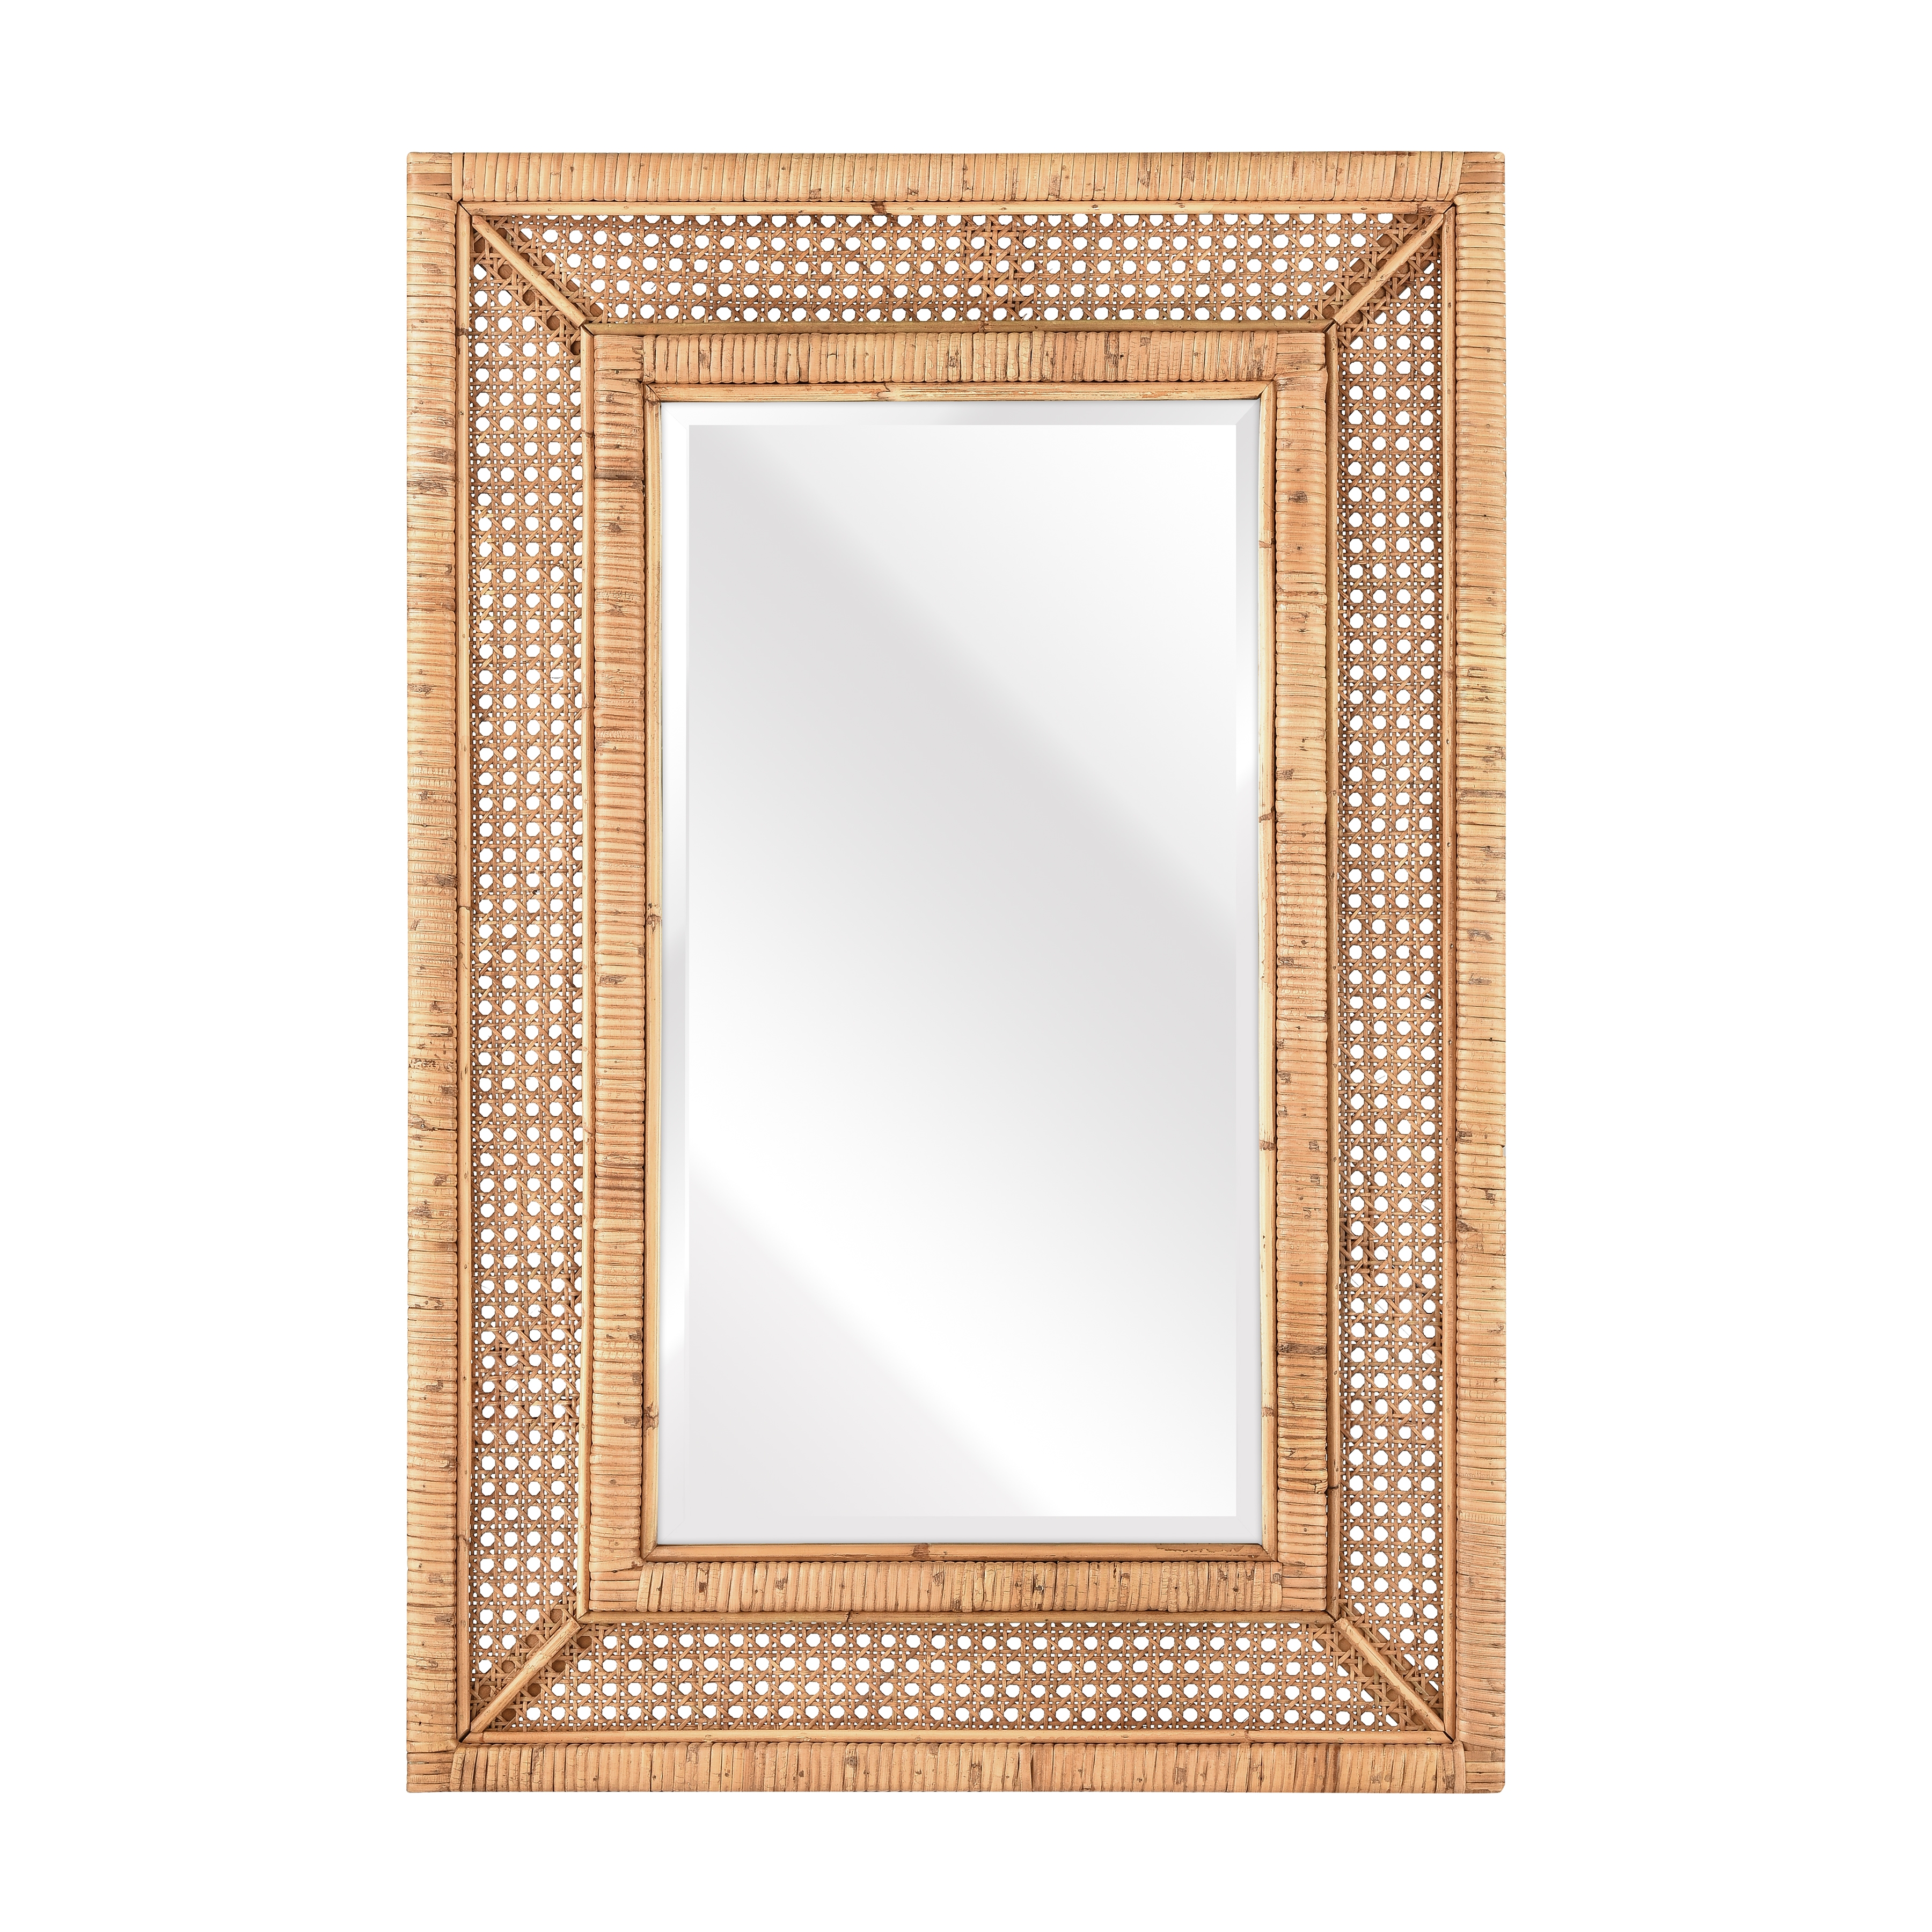 Sandbar Mirror - Image 0